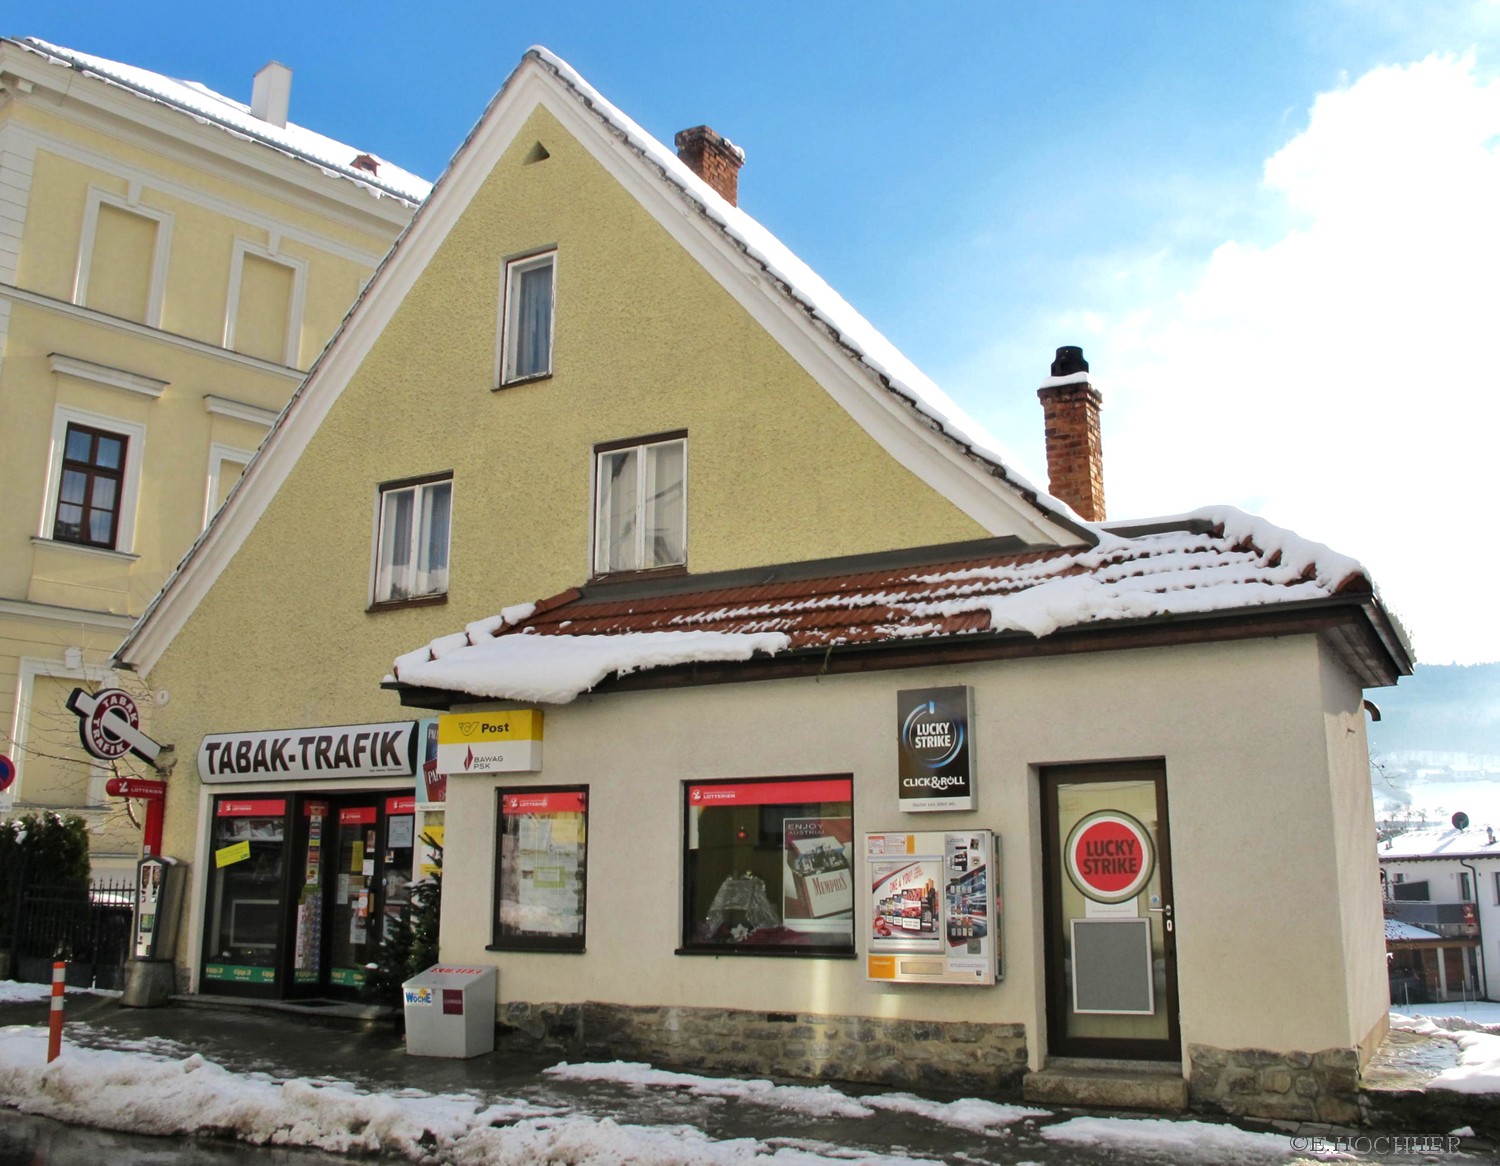 Trafik-Kiosk-Haus